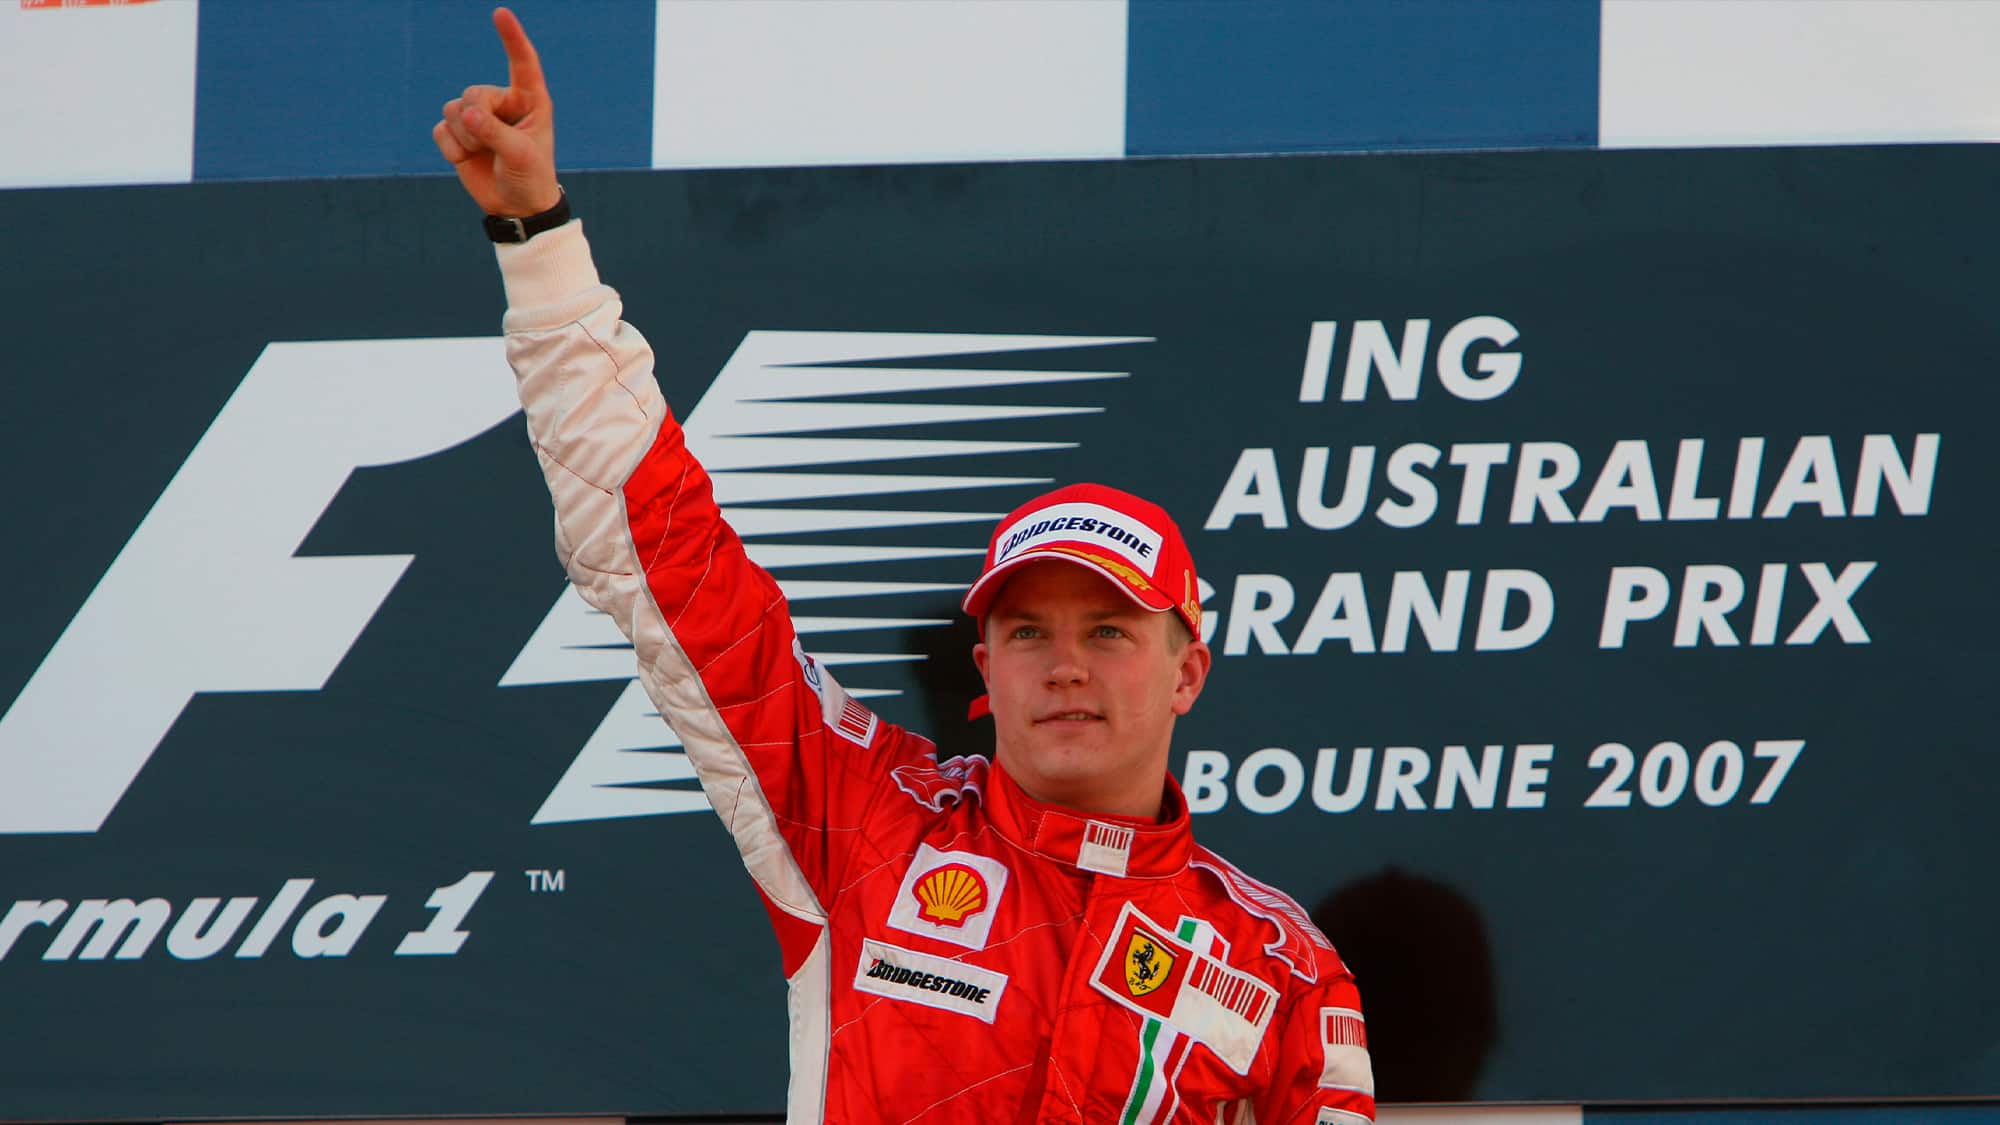 Kimi Raikkonen on the podium at 2007 Australian Grand Prix